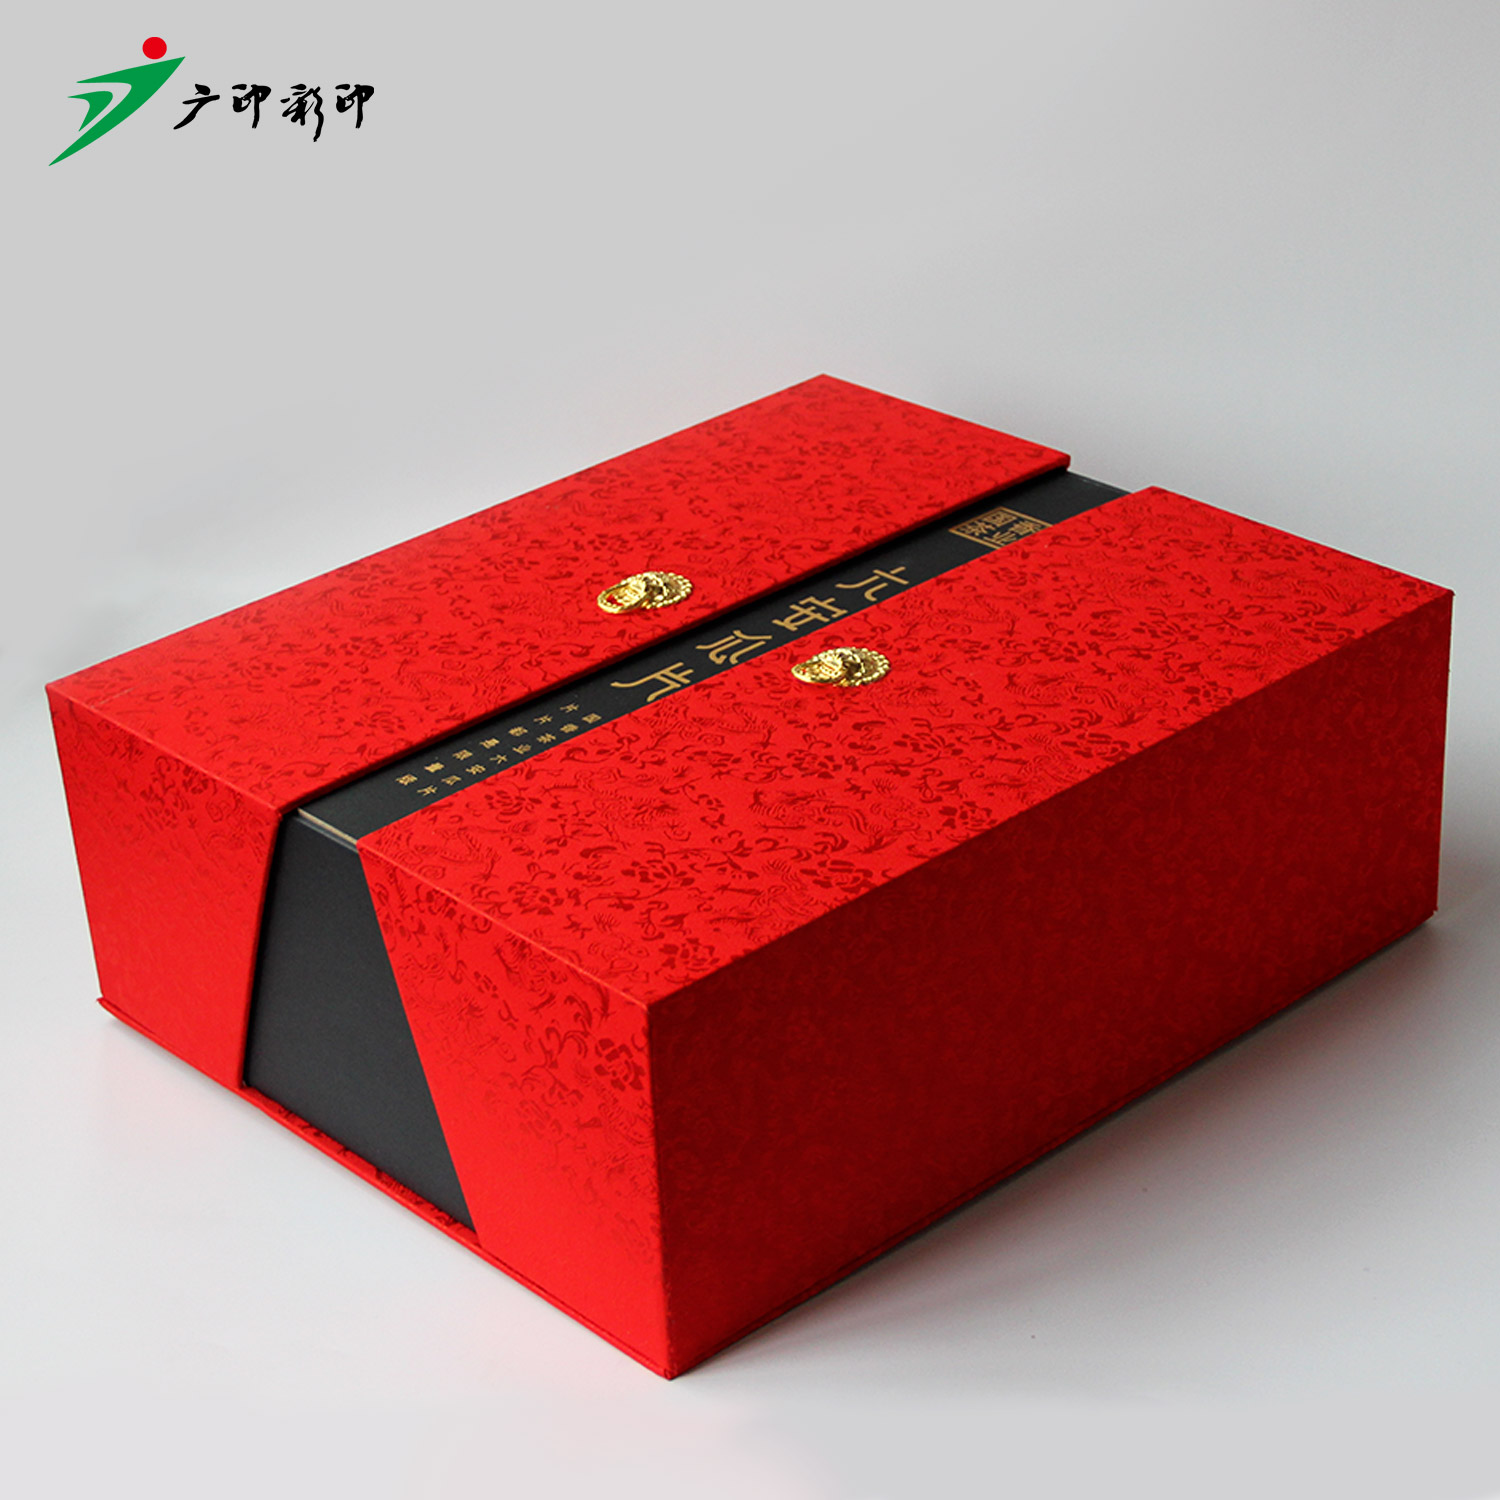 安徽茶叶包装盒生产厂家广印彩印天地盖现+书本开盒茶叶礼盒包装定制